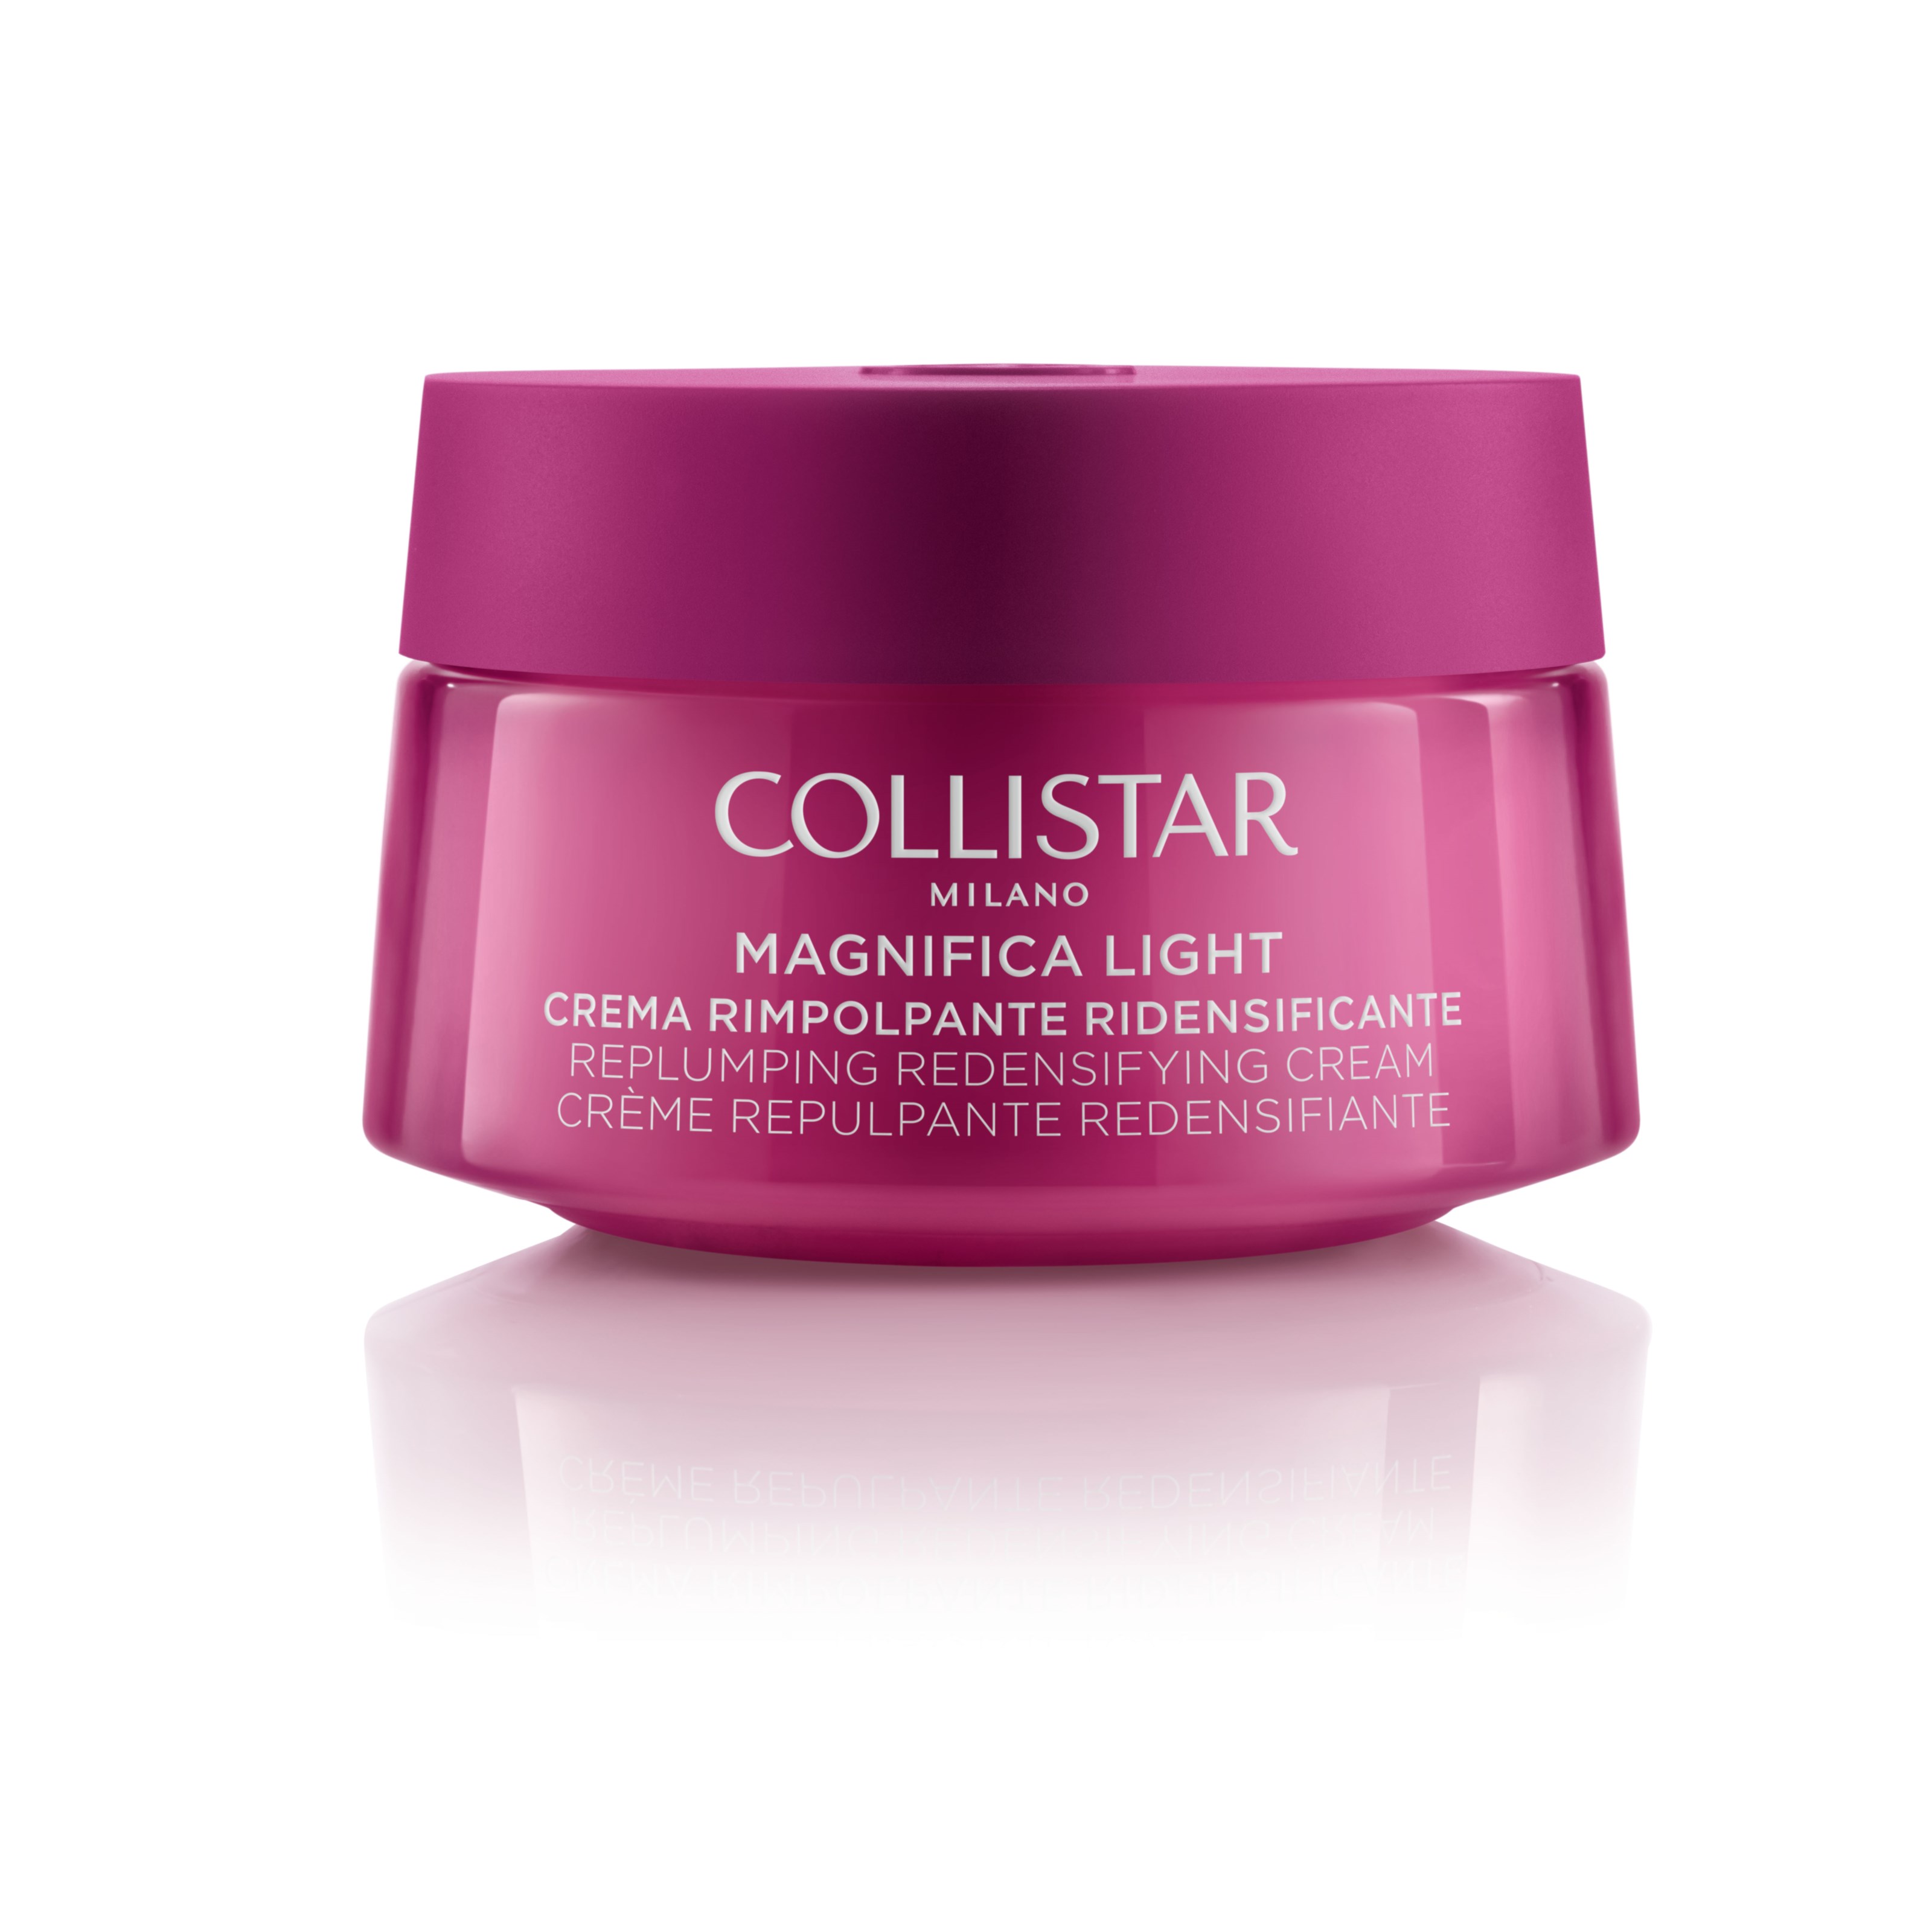 Läs mer om Collistar Magnifica Light Replumping Regenerating Face & Neck Cream 50